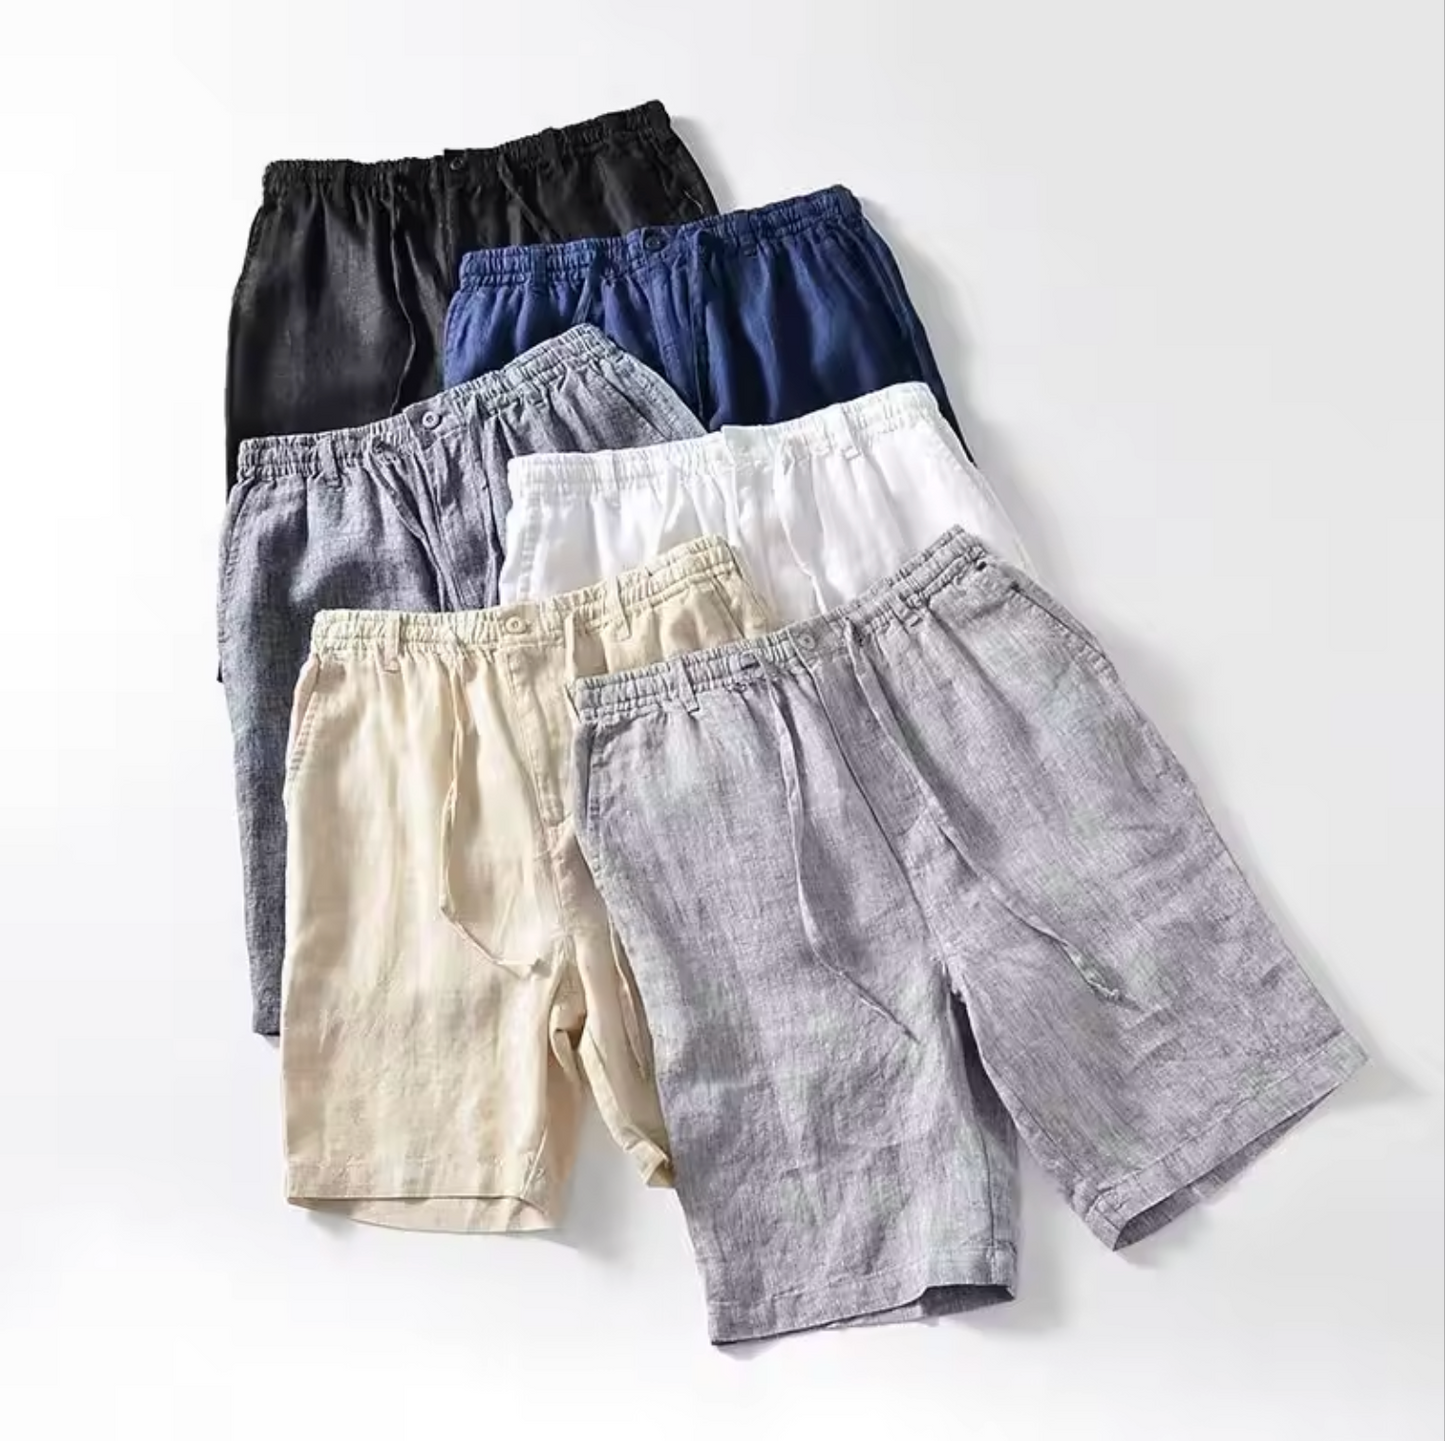 Izmir - Linen Shorts